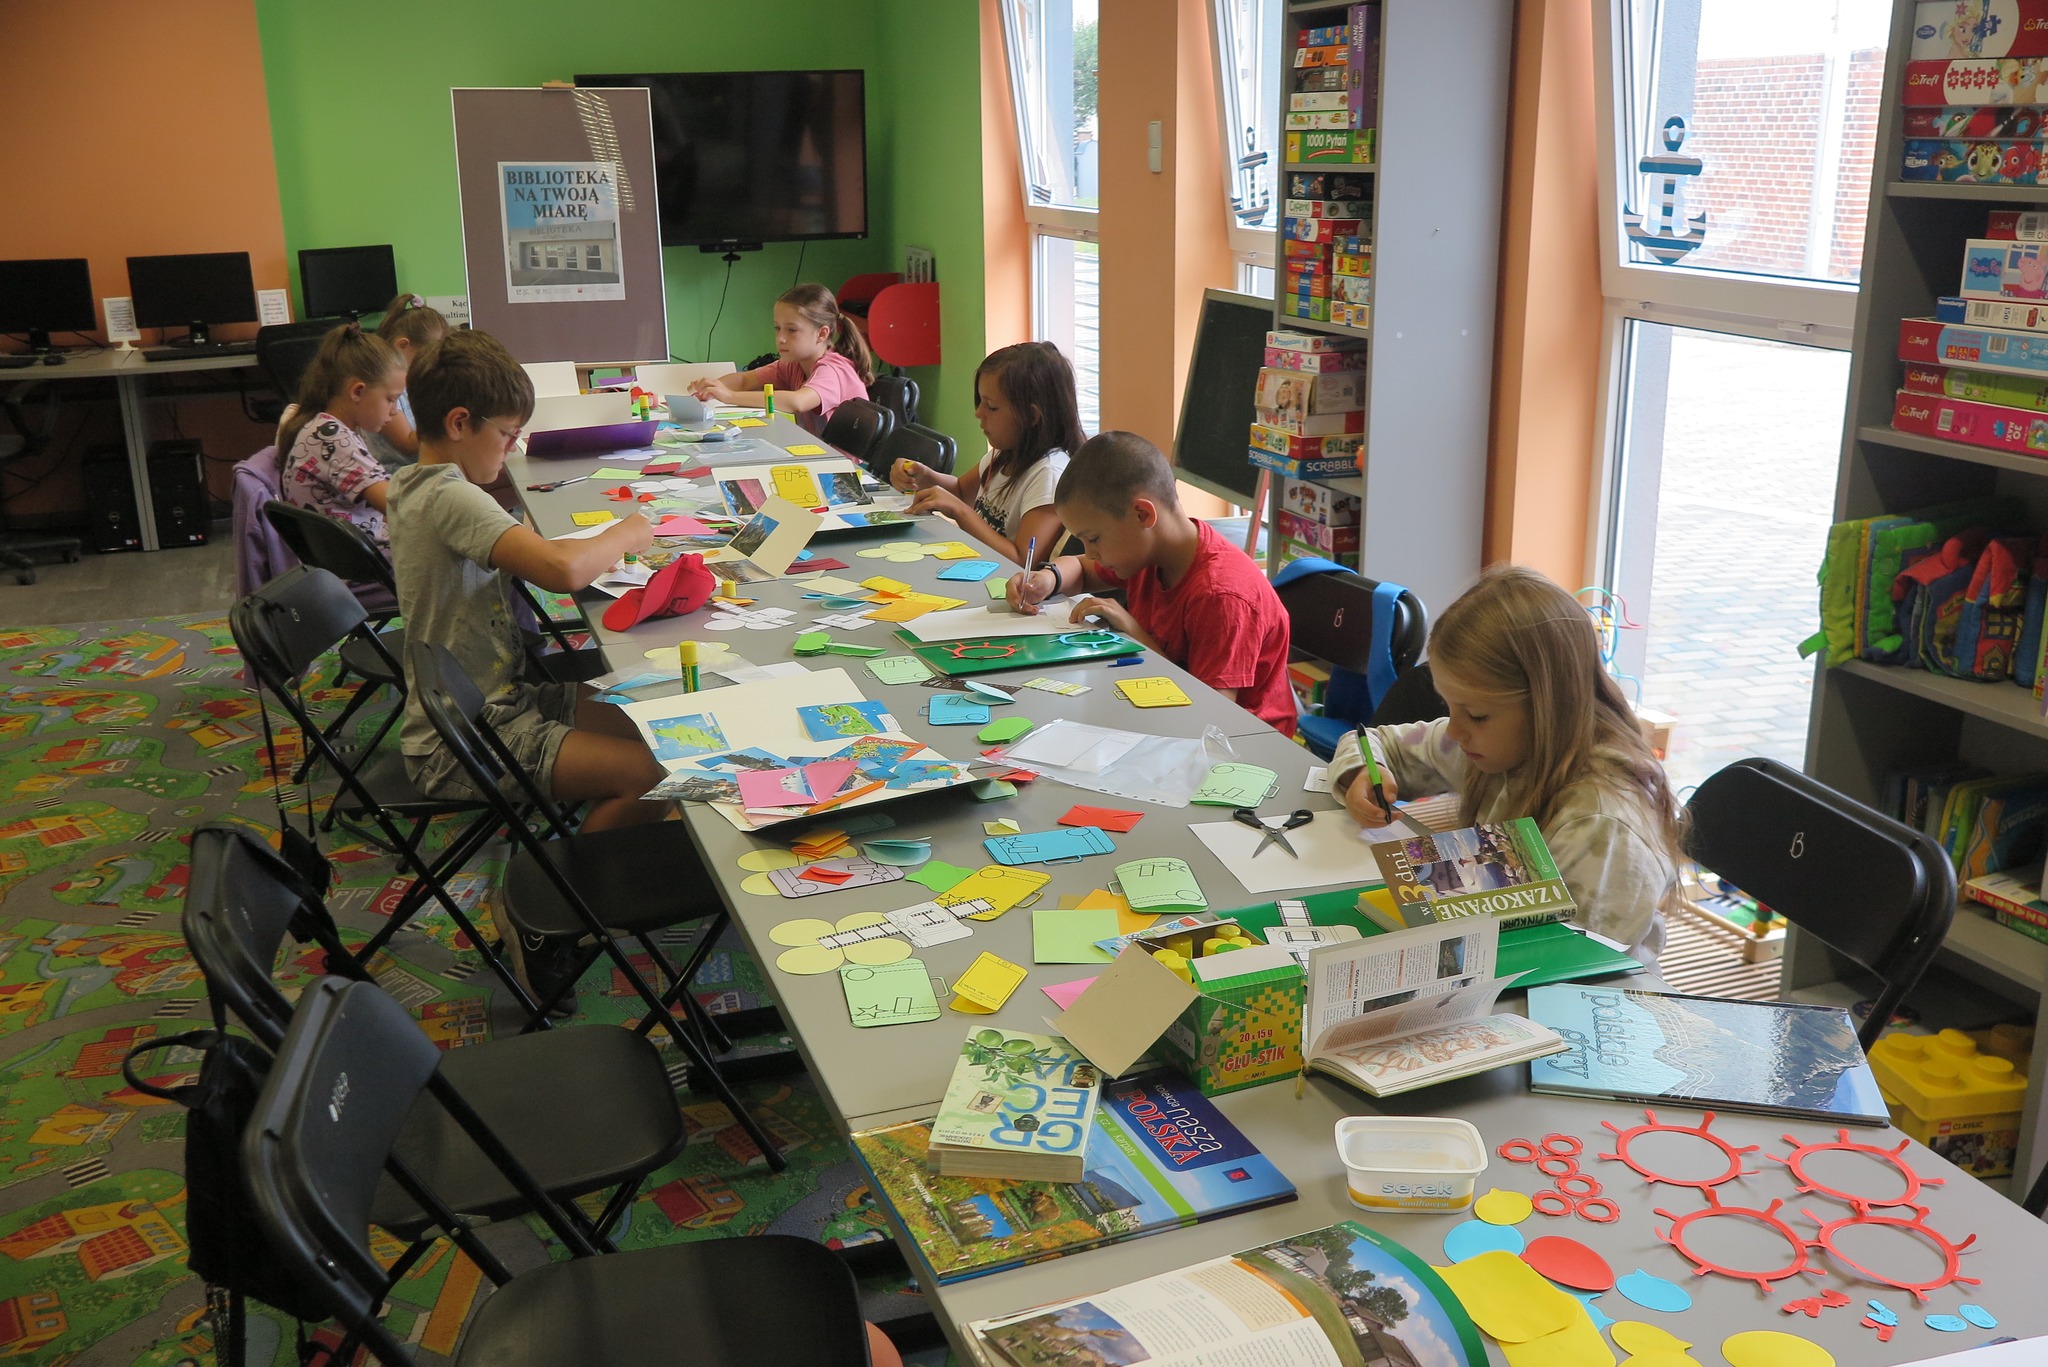 dzieci siedzą przy długim stole na którym leża materiały papiernicze, dzieci wykonują lapbooki 